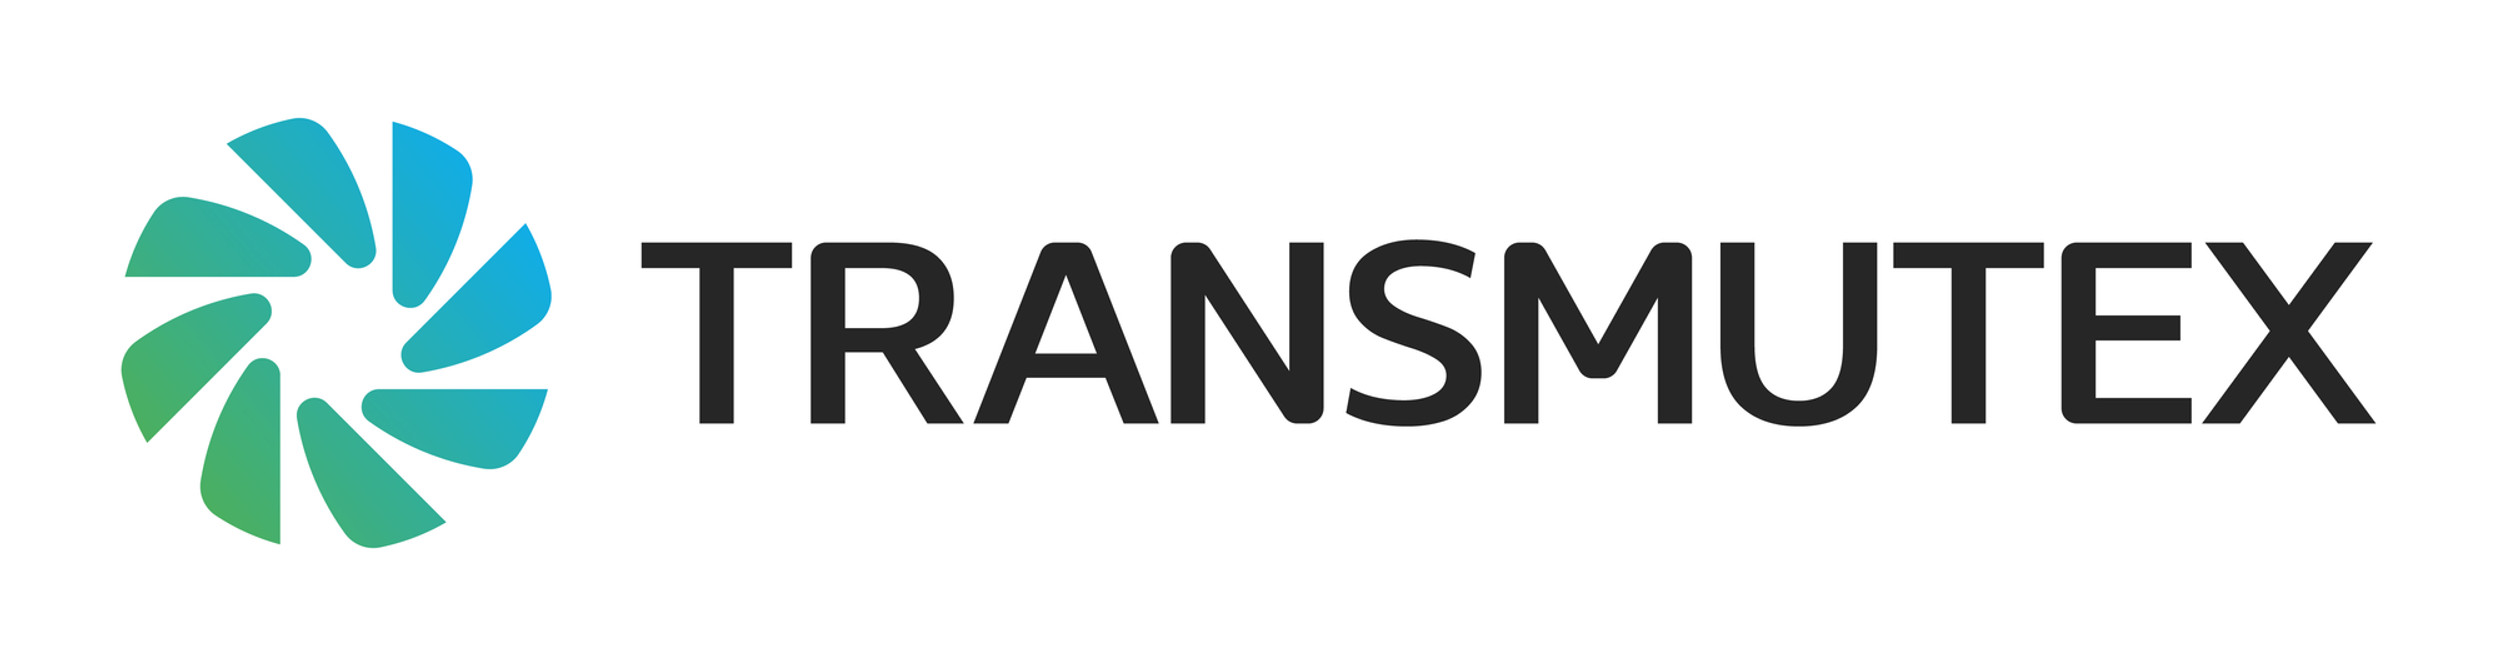 Il logotipo della Transmutex